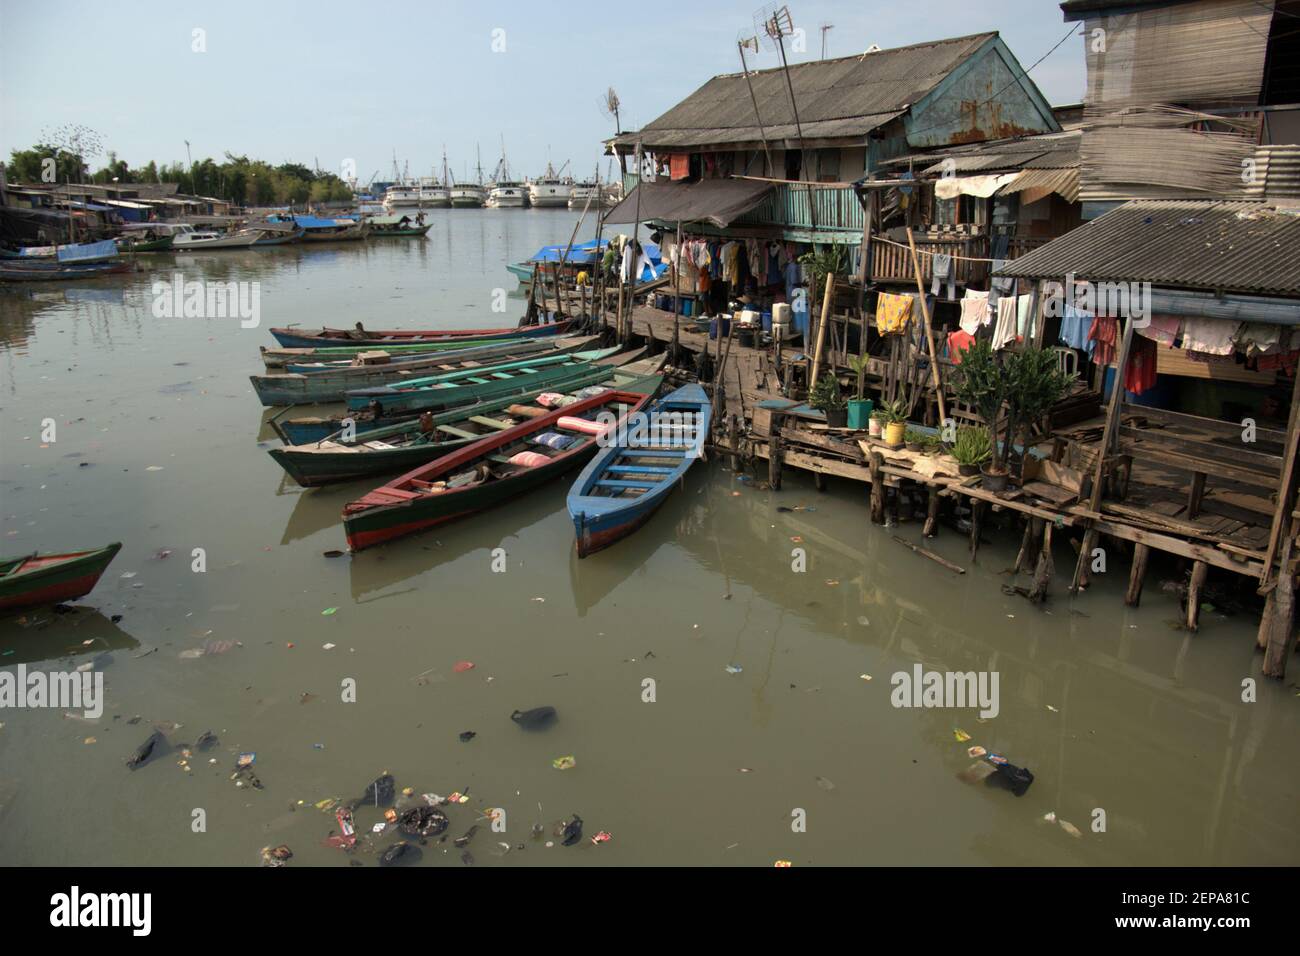 Des bateaux en bois et un village populairement connu sous le nom de Luar Batang, sur l'estuaire de la rivière Ciliwung, photographiés dans un fond de Sunda Kelapa traditionnel port dans la zone côtière de Jakarta, Indonésie (2008). Banque D'Images